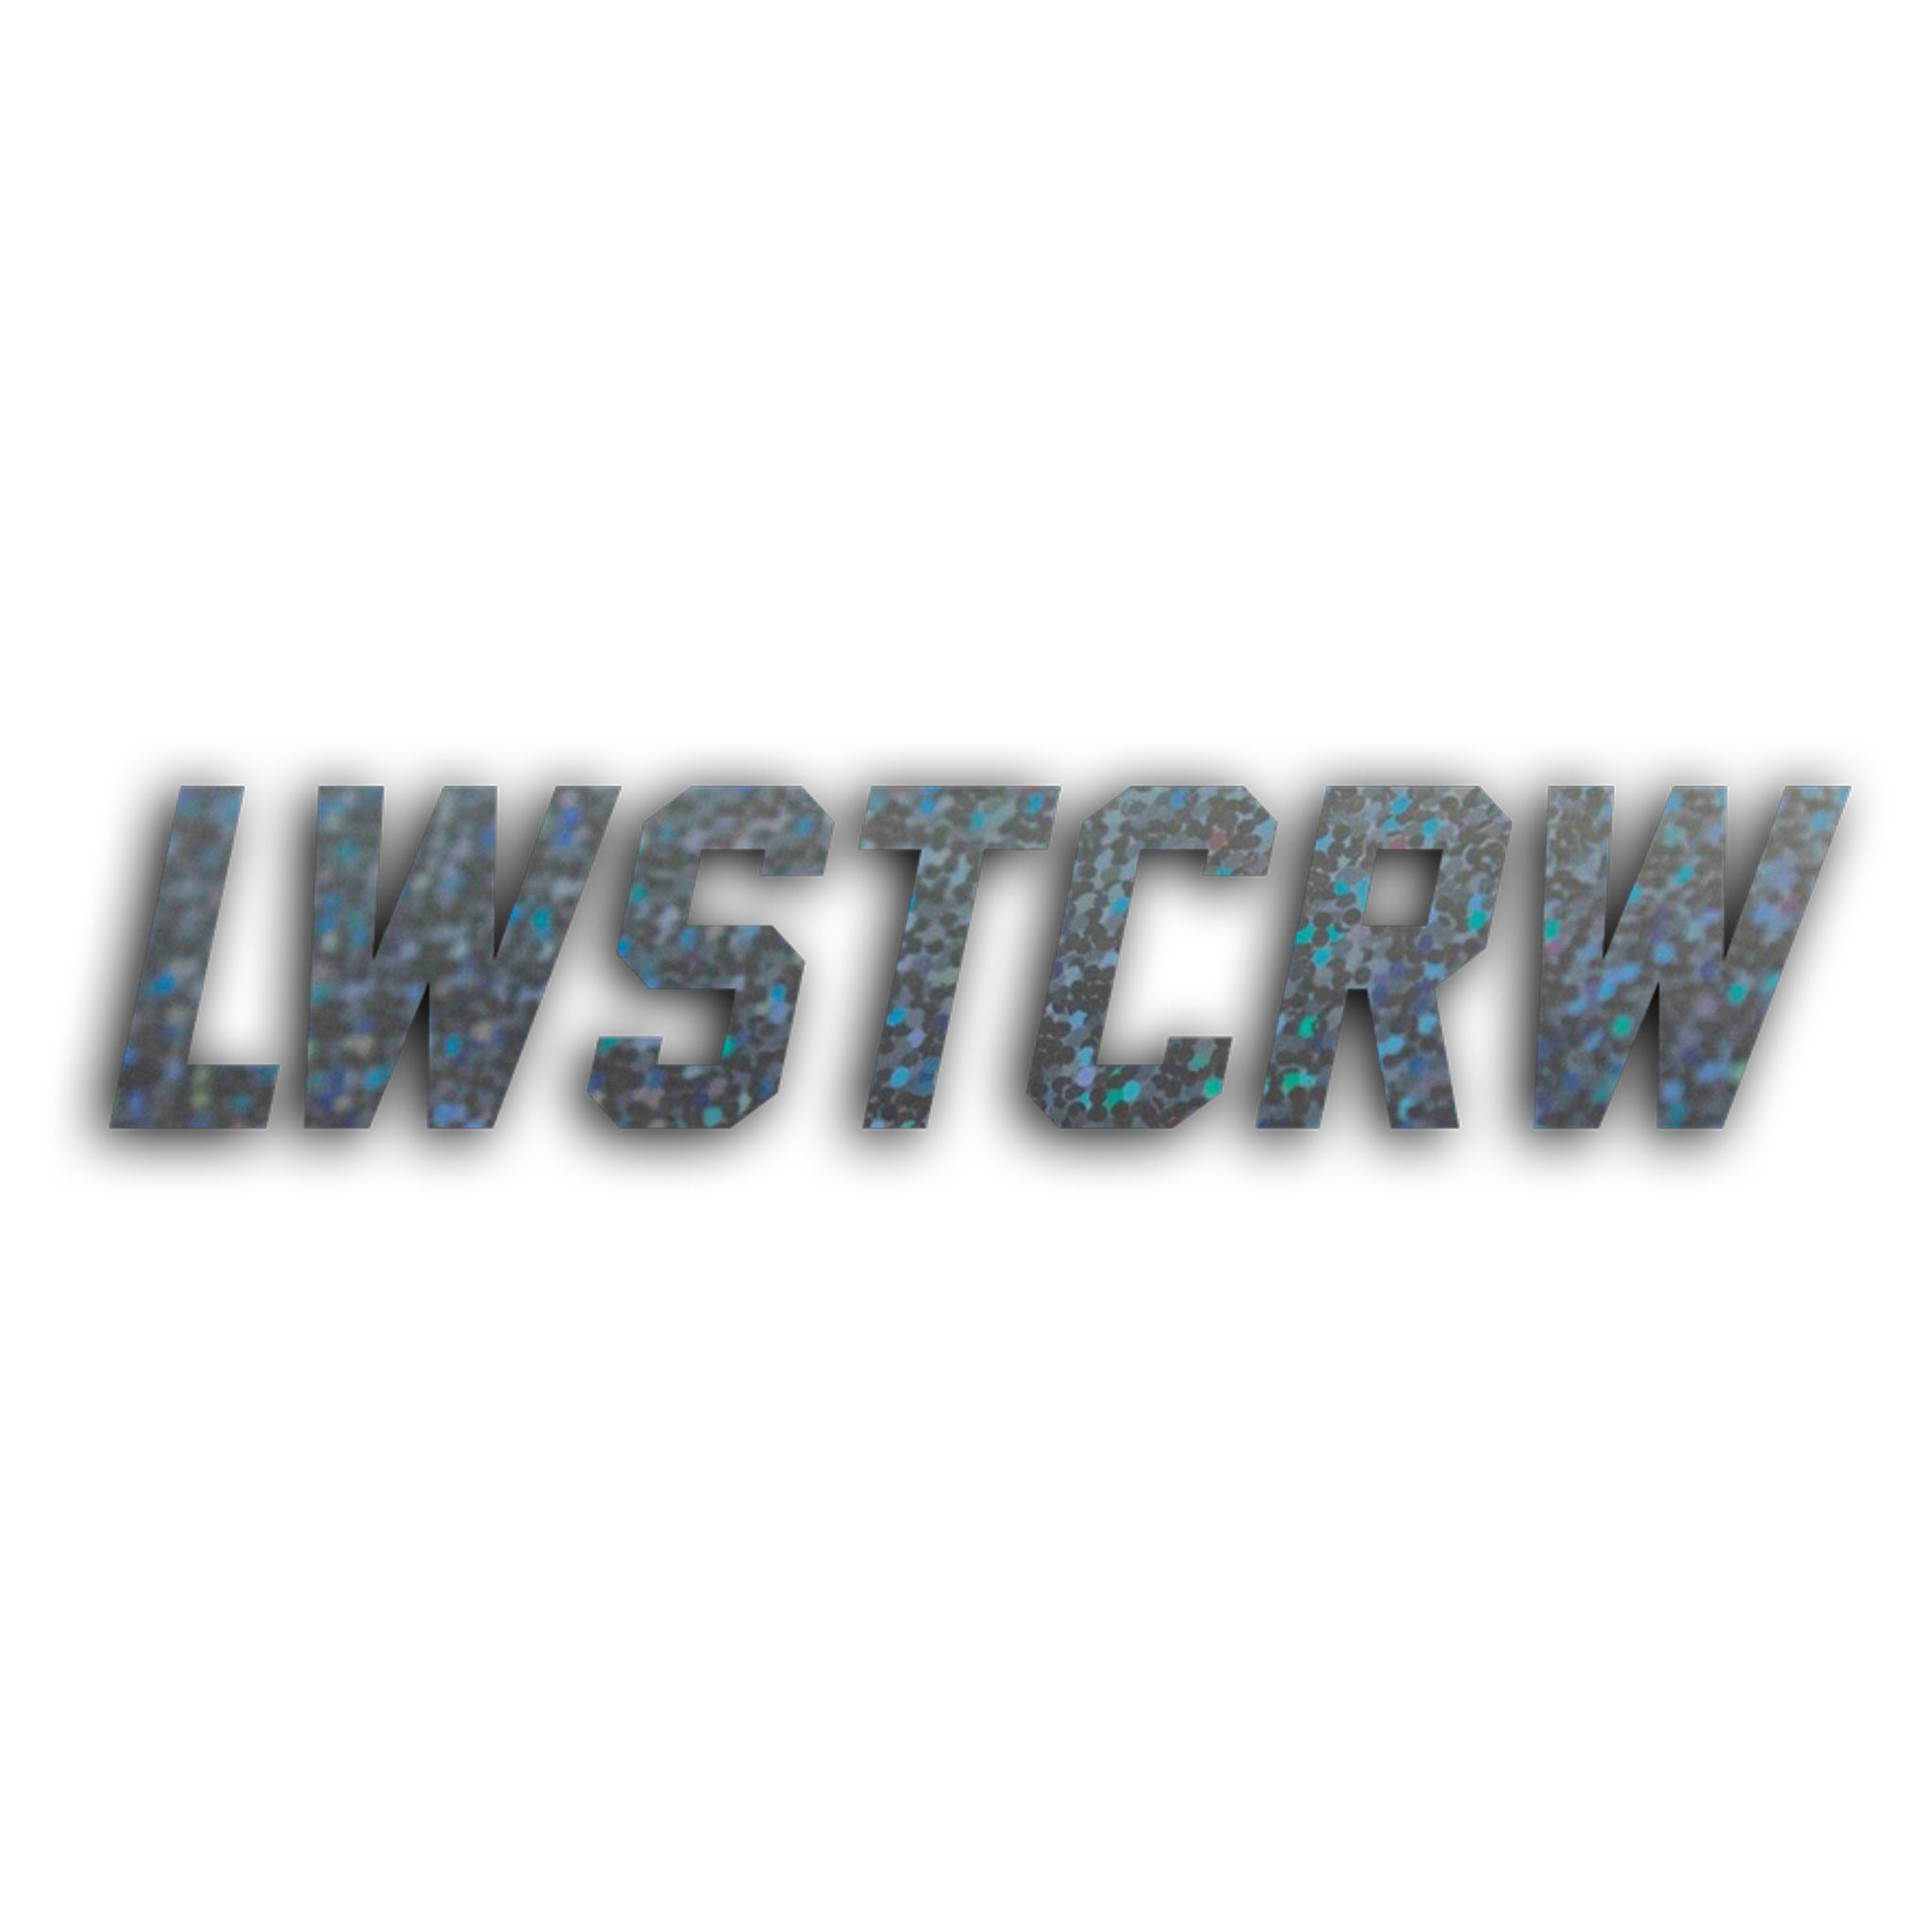 LWSTCRW™ XXL Sticker "JERSEY"